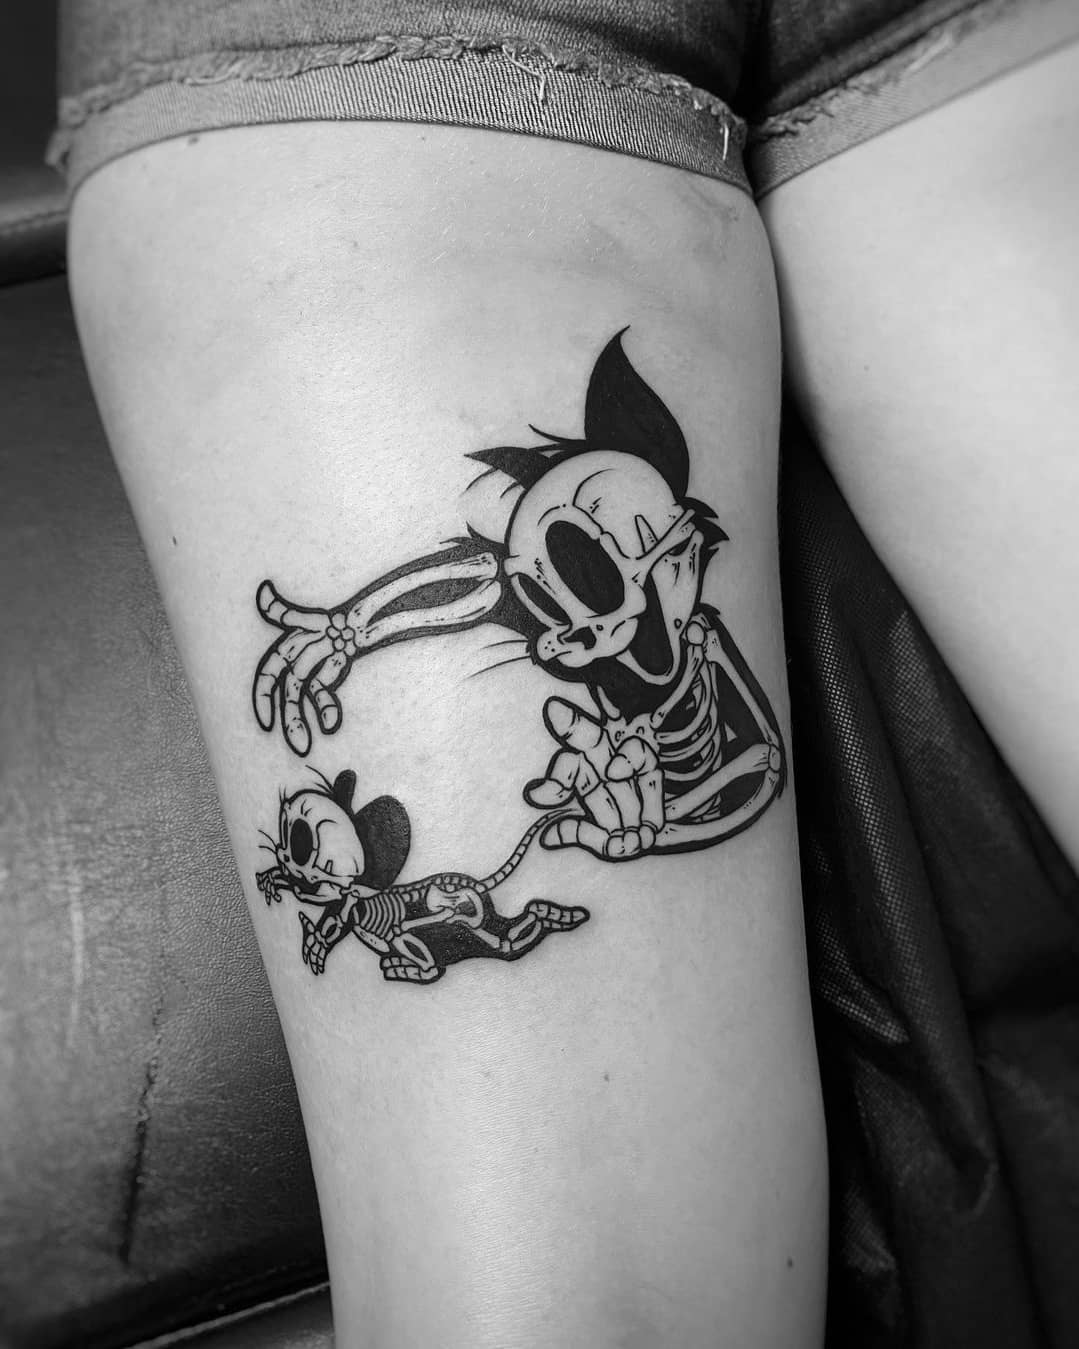 Tom & Jerry Tattoo